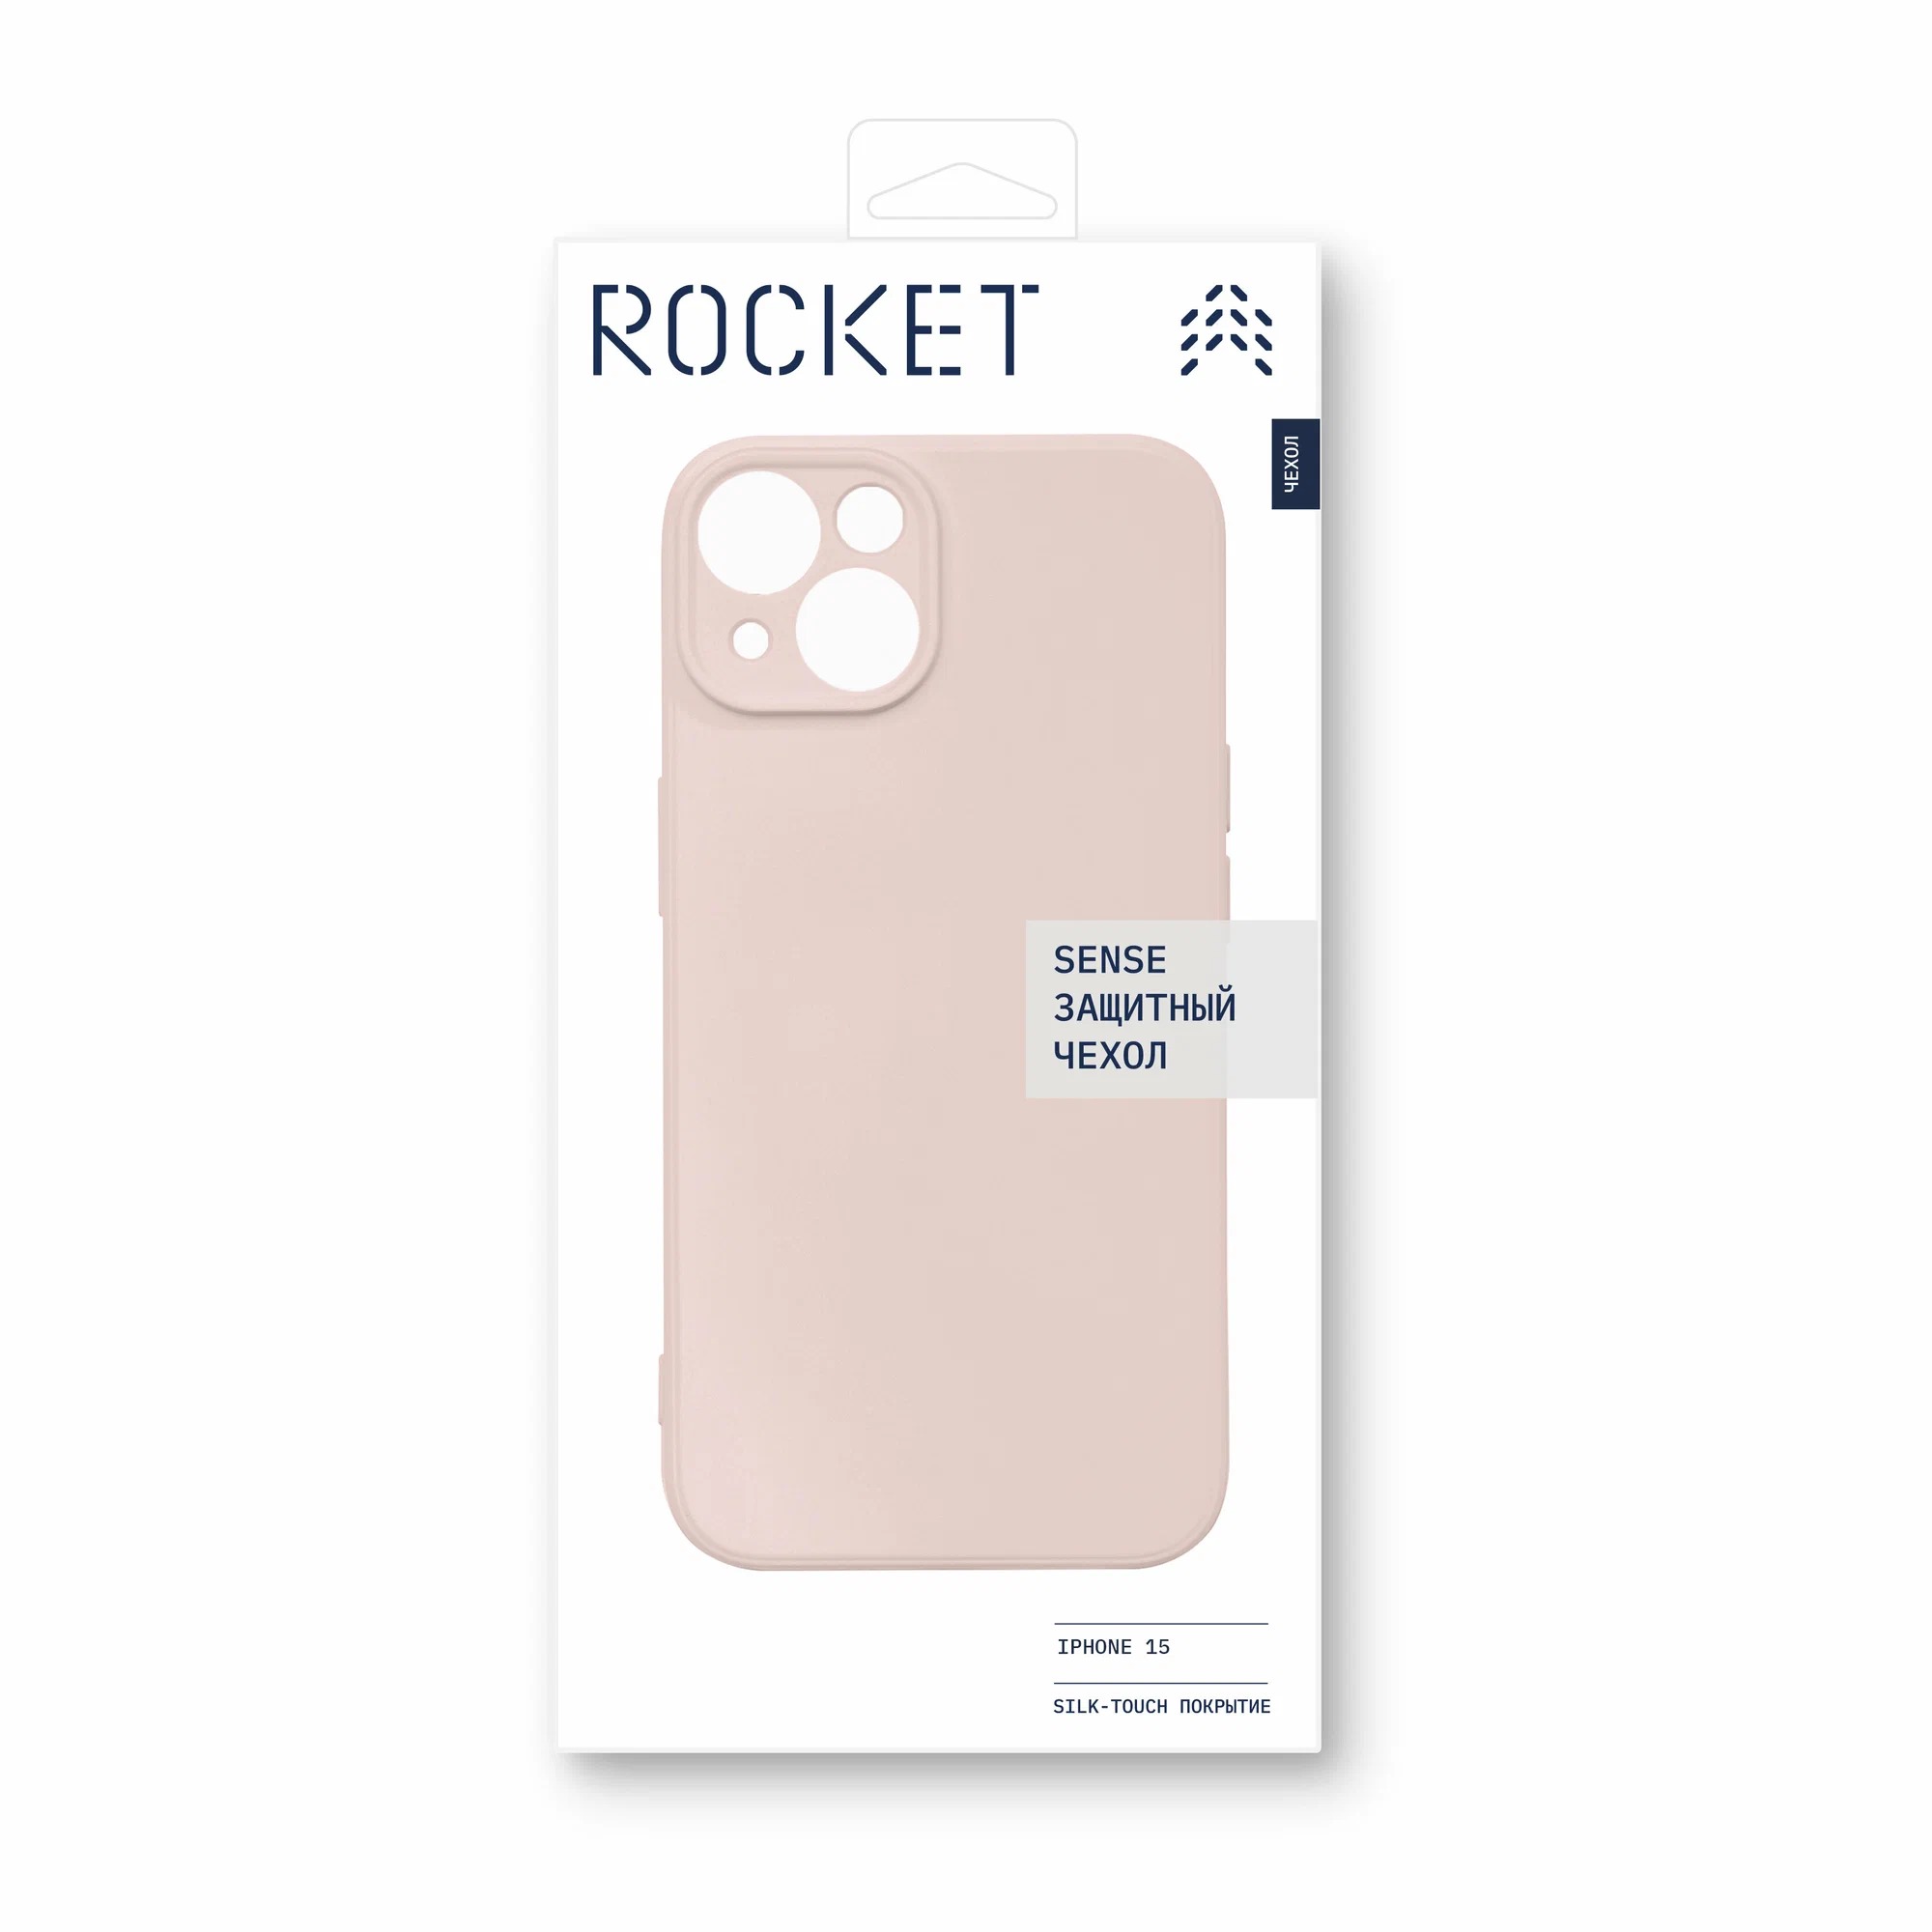 Чехол защитный Rocket Sense для iPhone 15, soft-touch матовый, TPU, персиковый